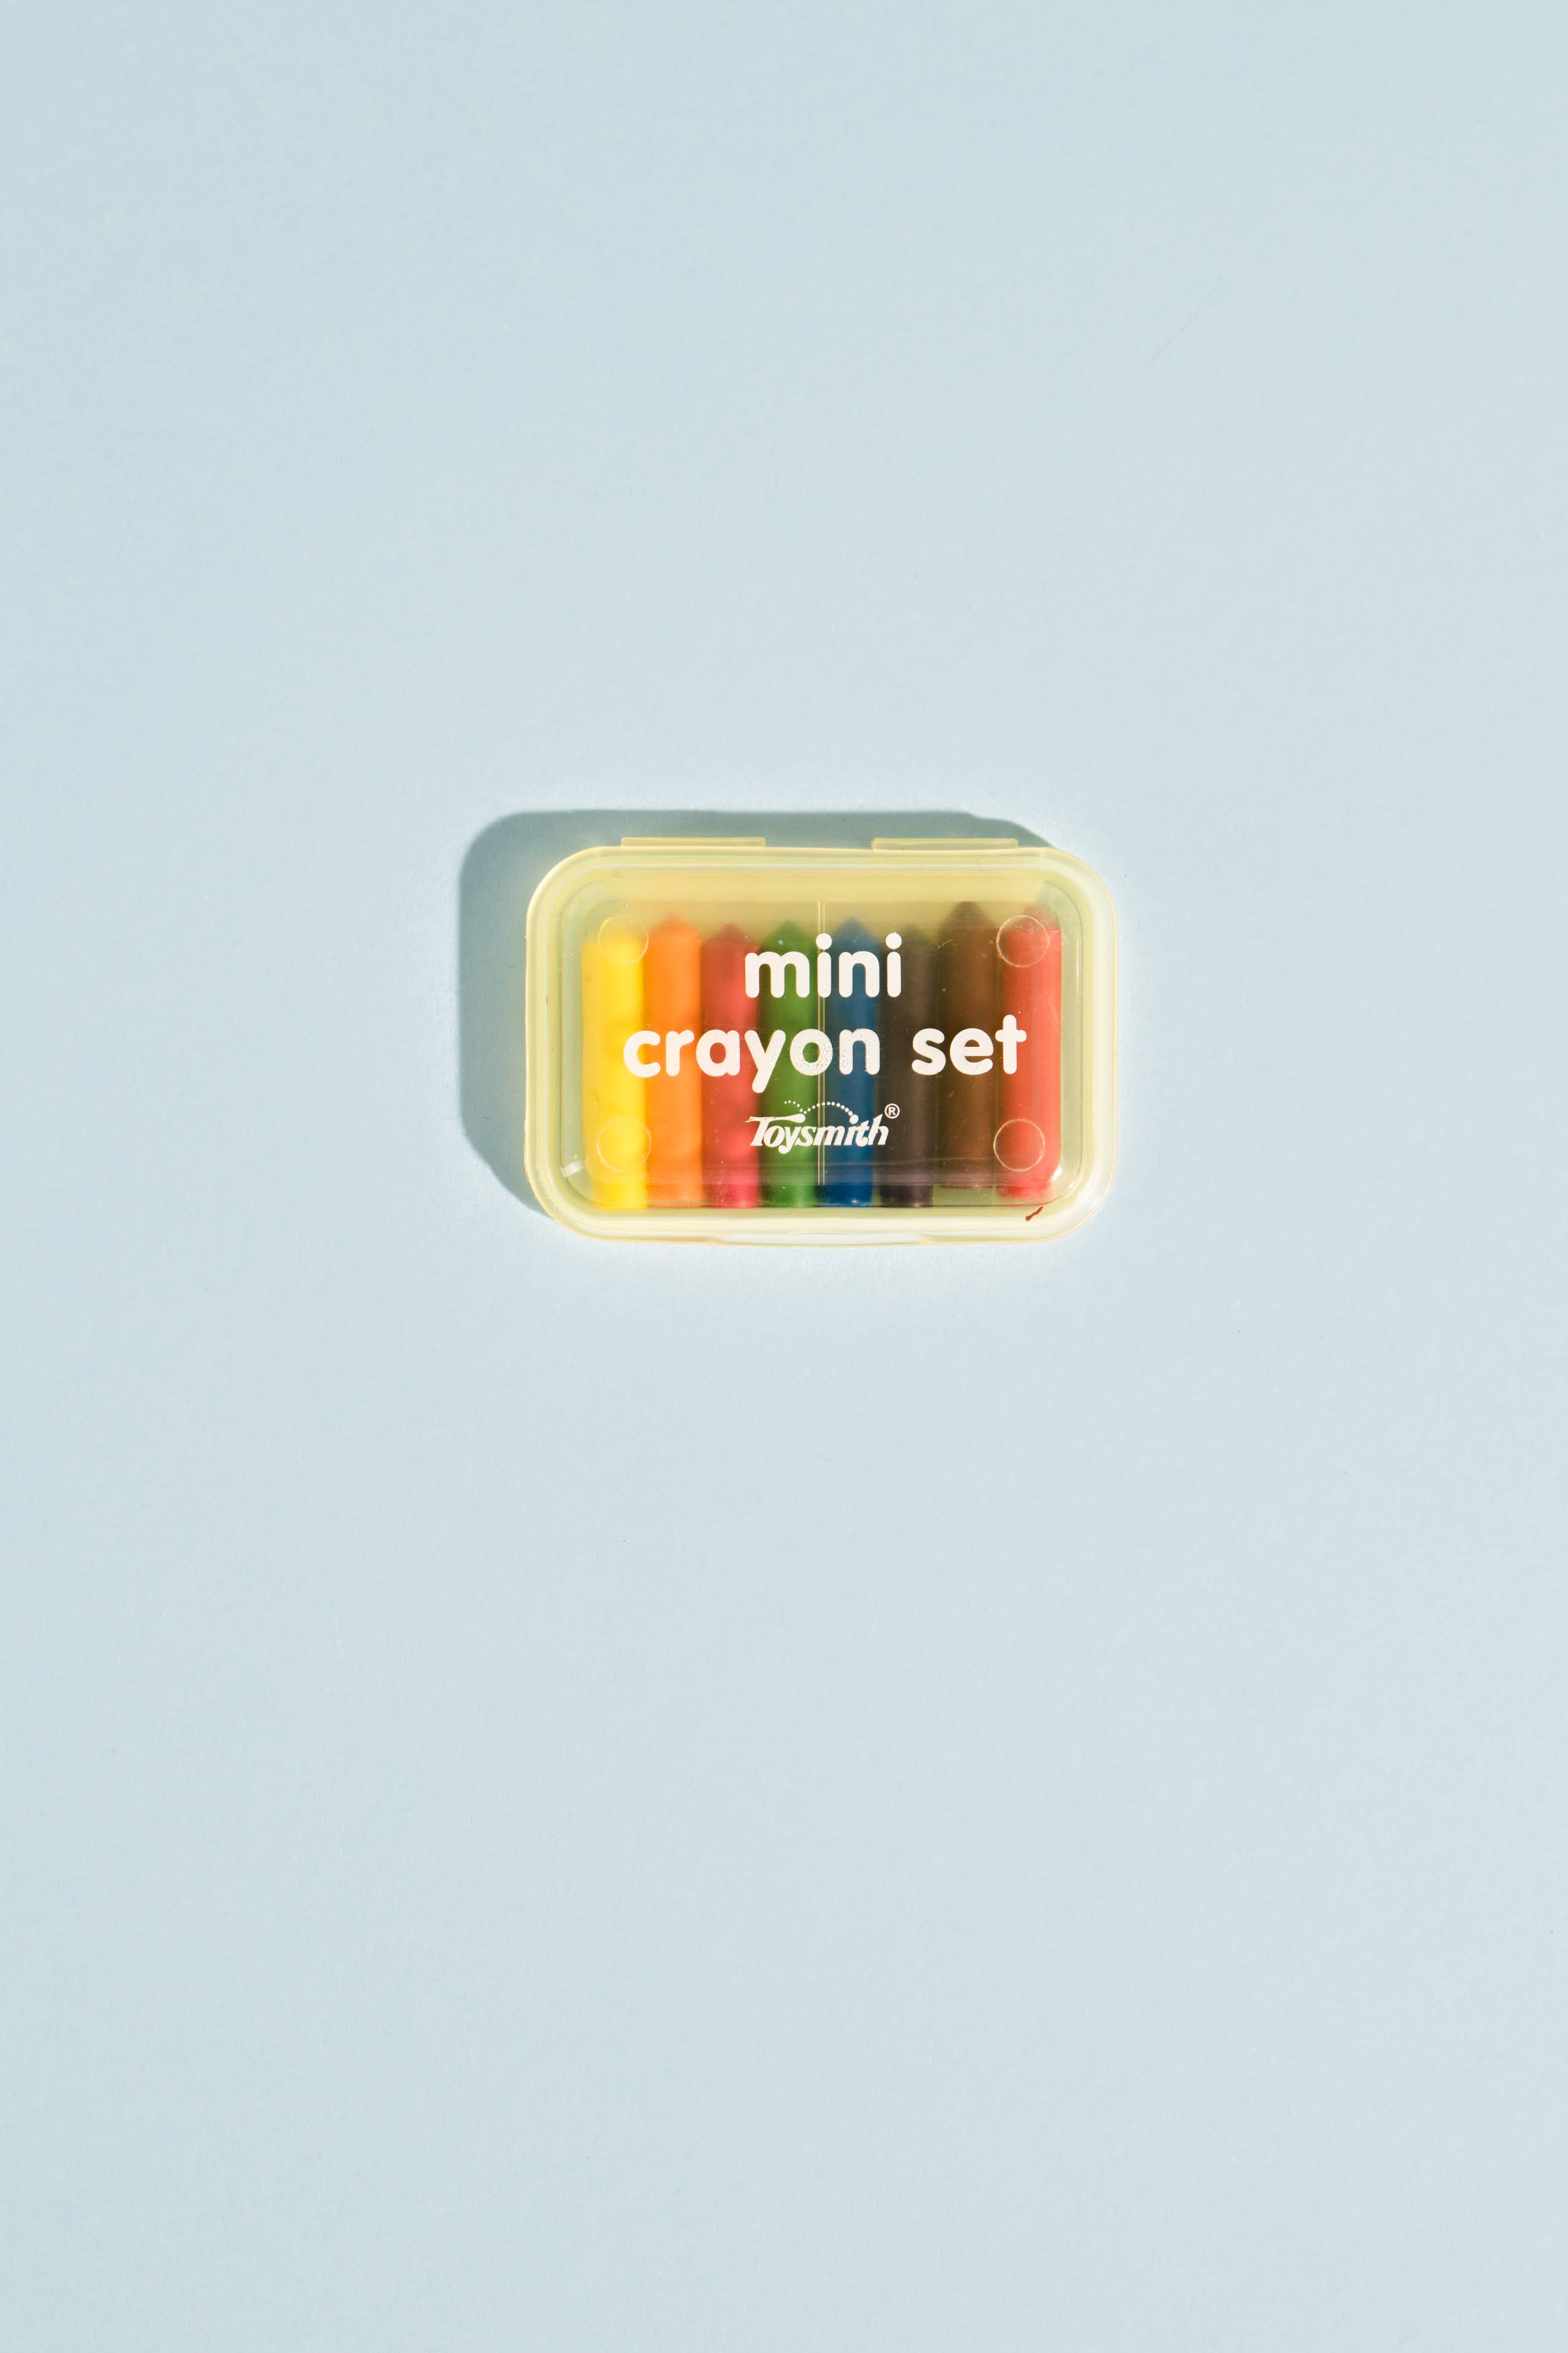 Mini Wax Crayon Packs (4pcs) 4 Assorted Colours : Henbrandt Ltd